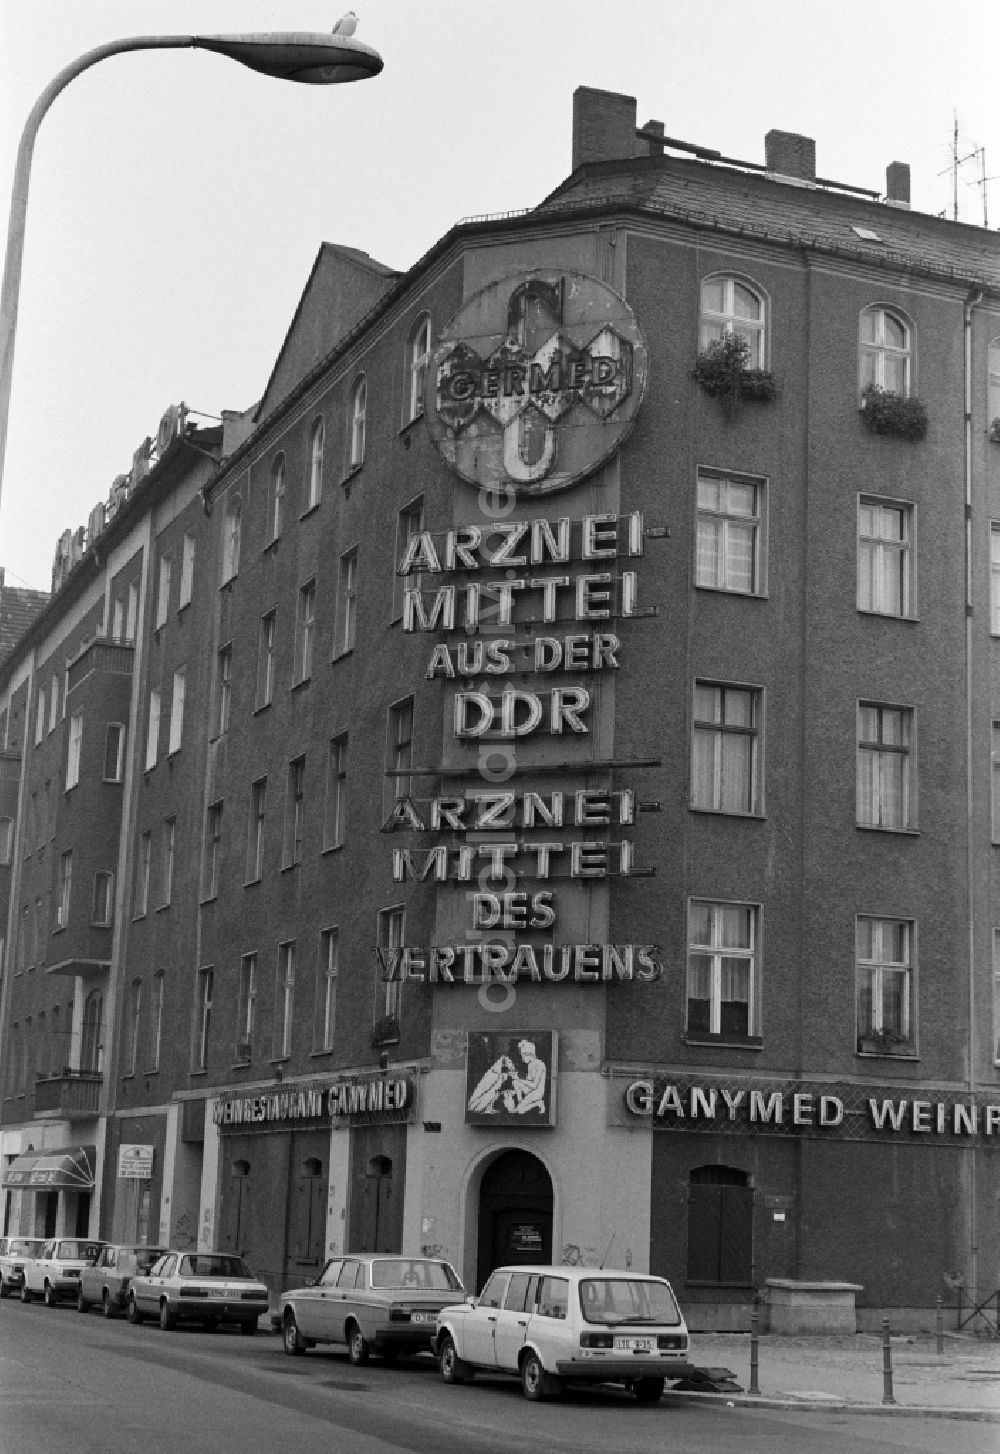 Berlin: Werbung für GERMED und Weinrestaurant Ganymed am Schiffbauerdamm in Berlin - Mitte, der ehemaligen Hauptstadt der DDR, Deutsche Demokratische Republik